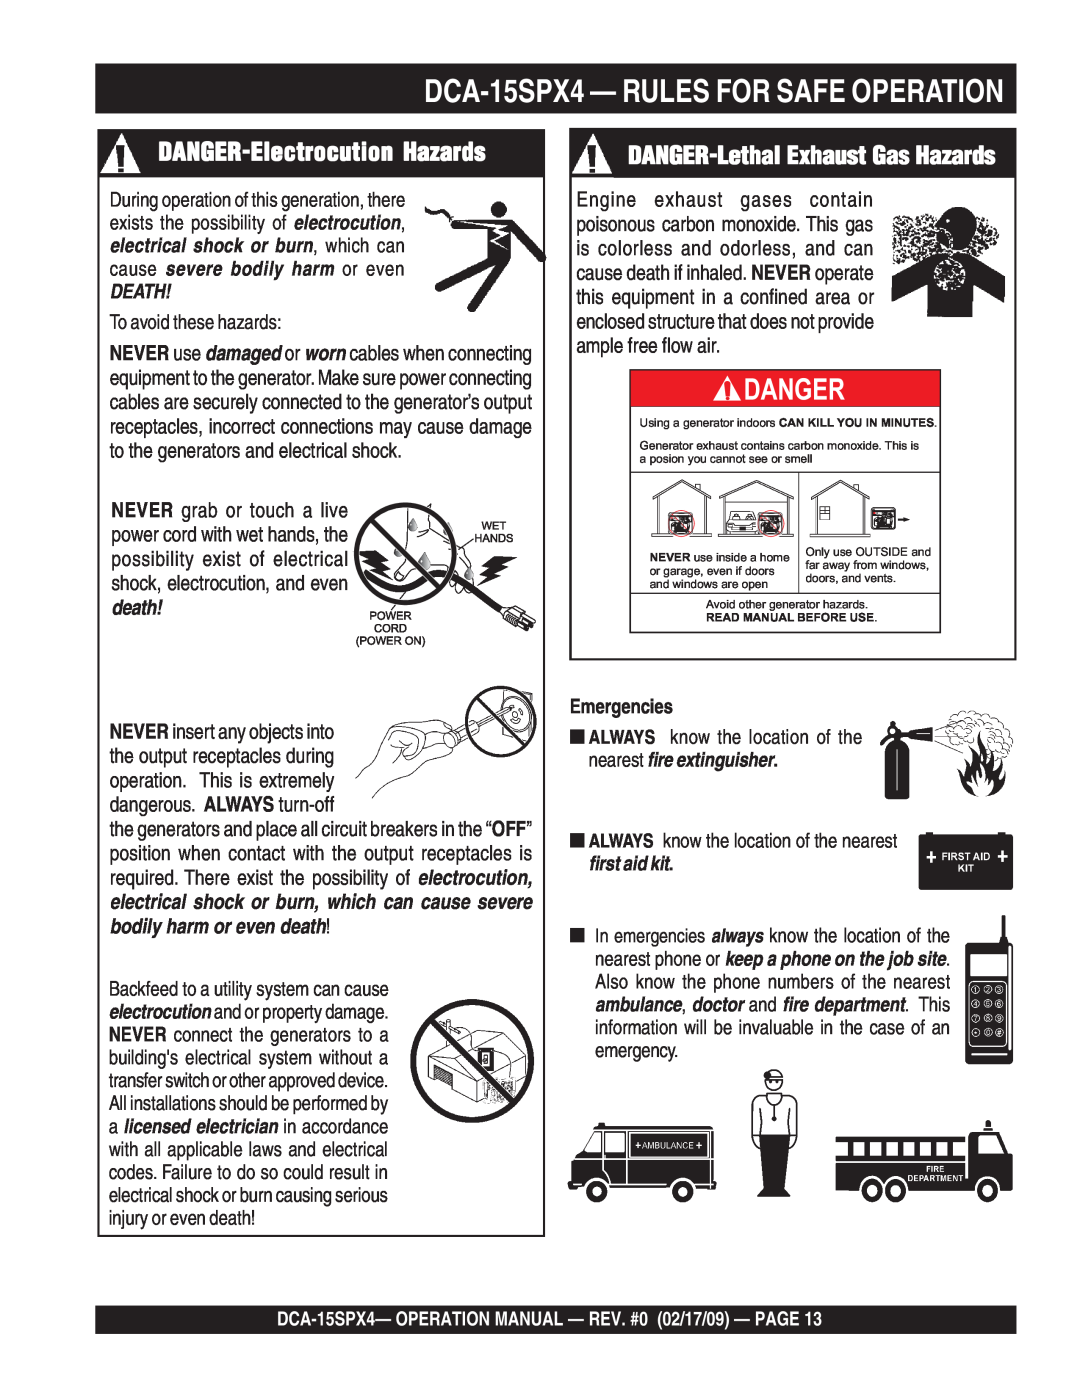 Multiquip DCA-15SPX4 DANGER-Electrocution Hazards, DANGER-Lethal Exhaust Gas Hazards, Danger, Death, Emergencies 